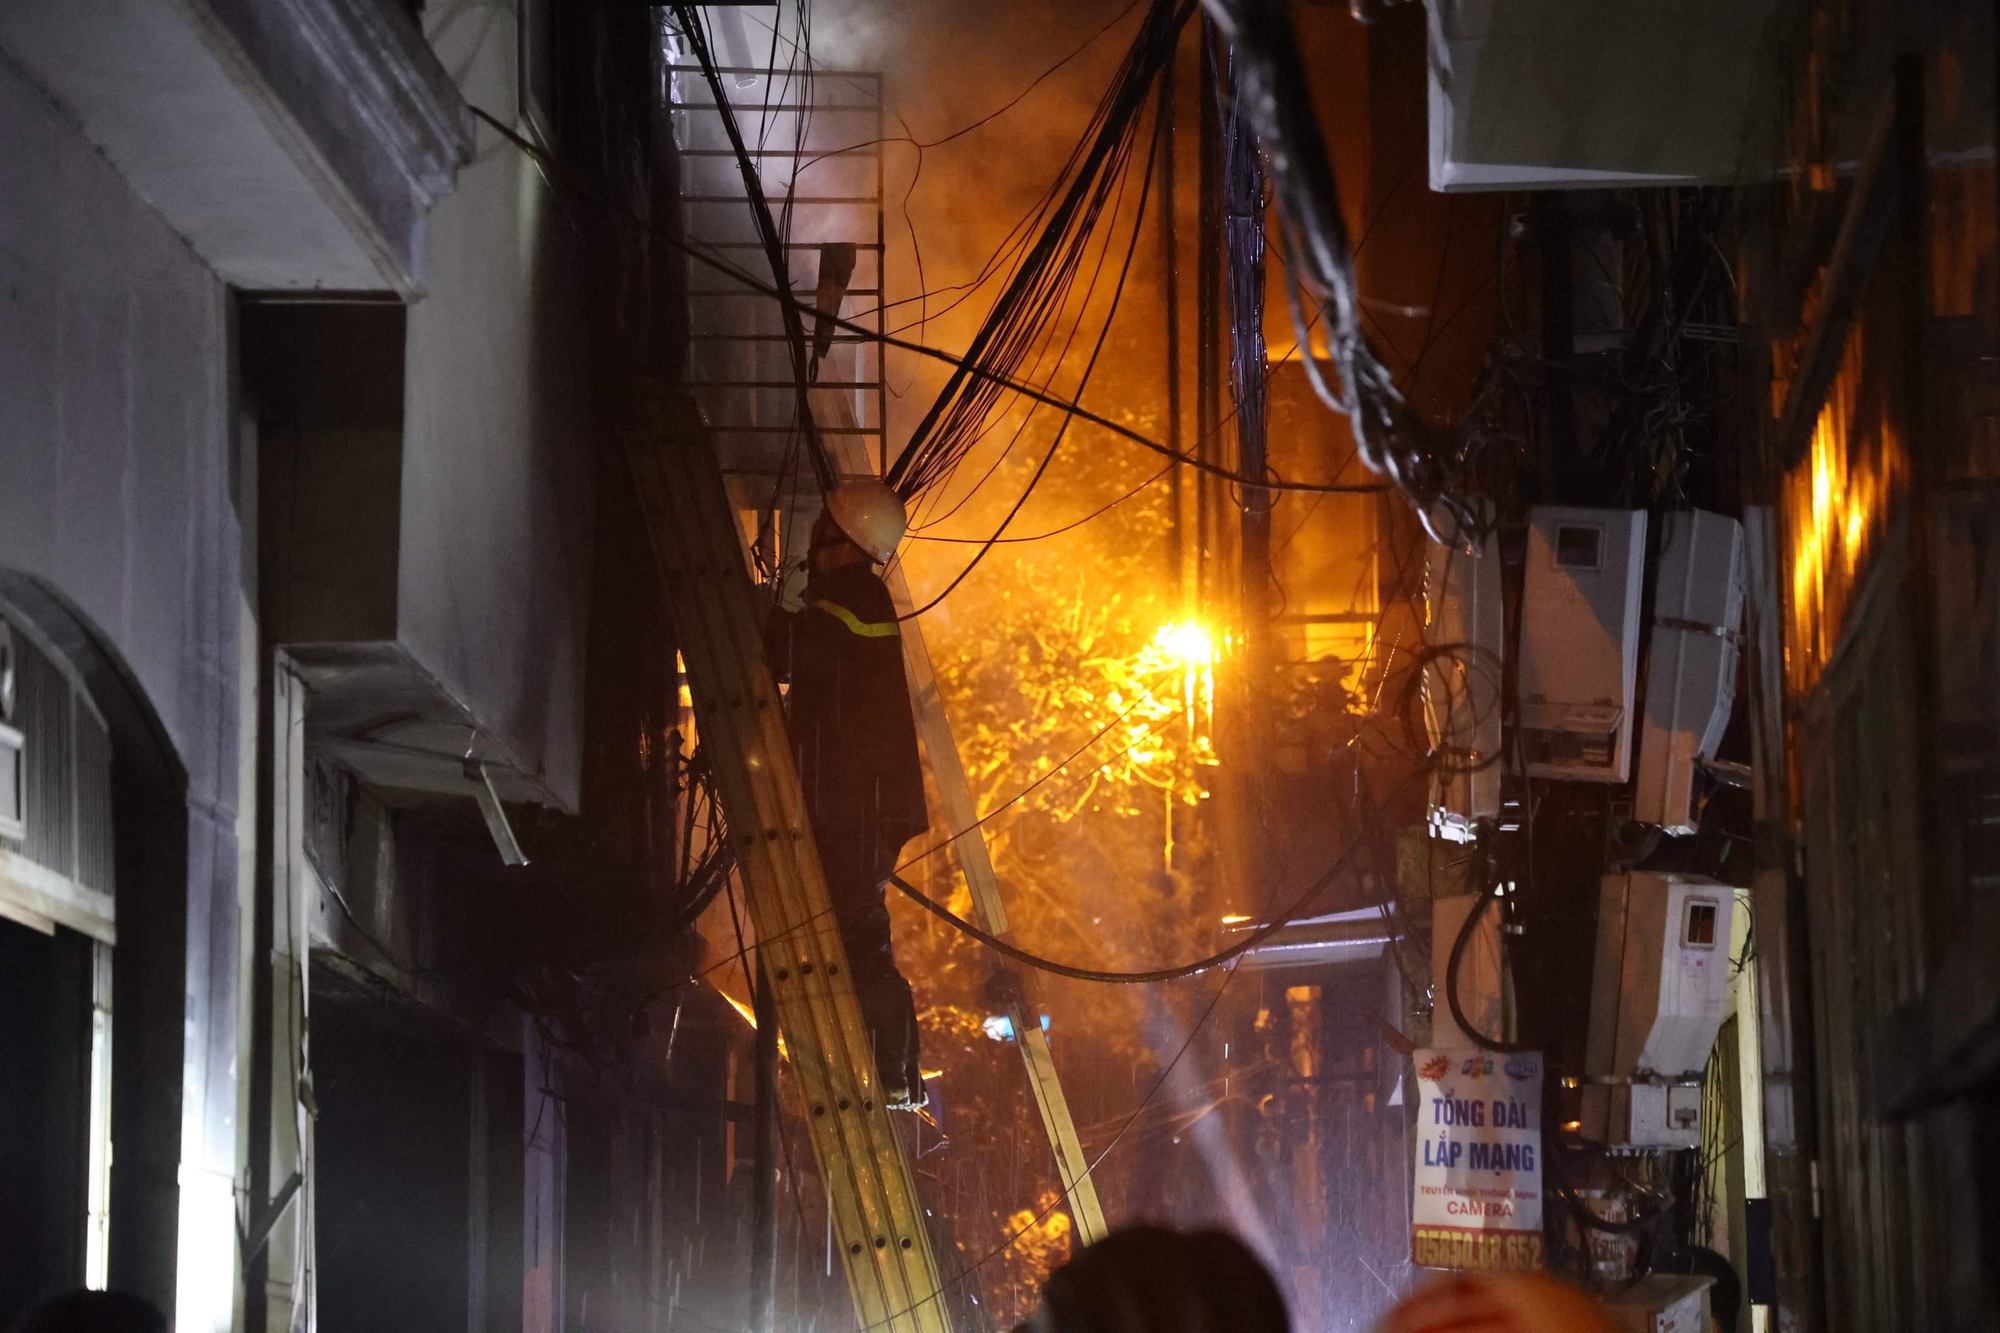 Hiện trường vụ cháy chung cư mini ở Hà Nội, nhiều nạn nhân được đưa ra ngoài - Ảnh 2.